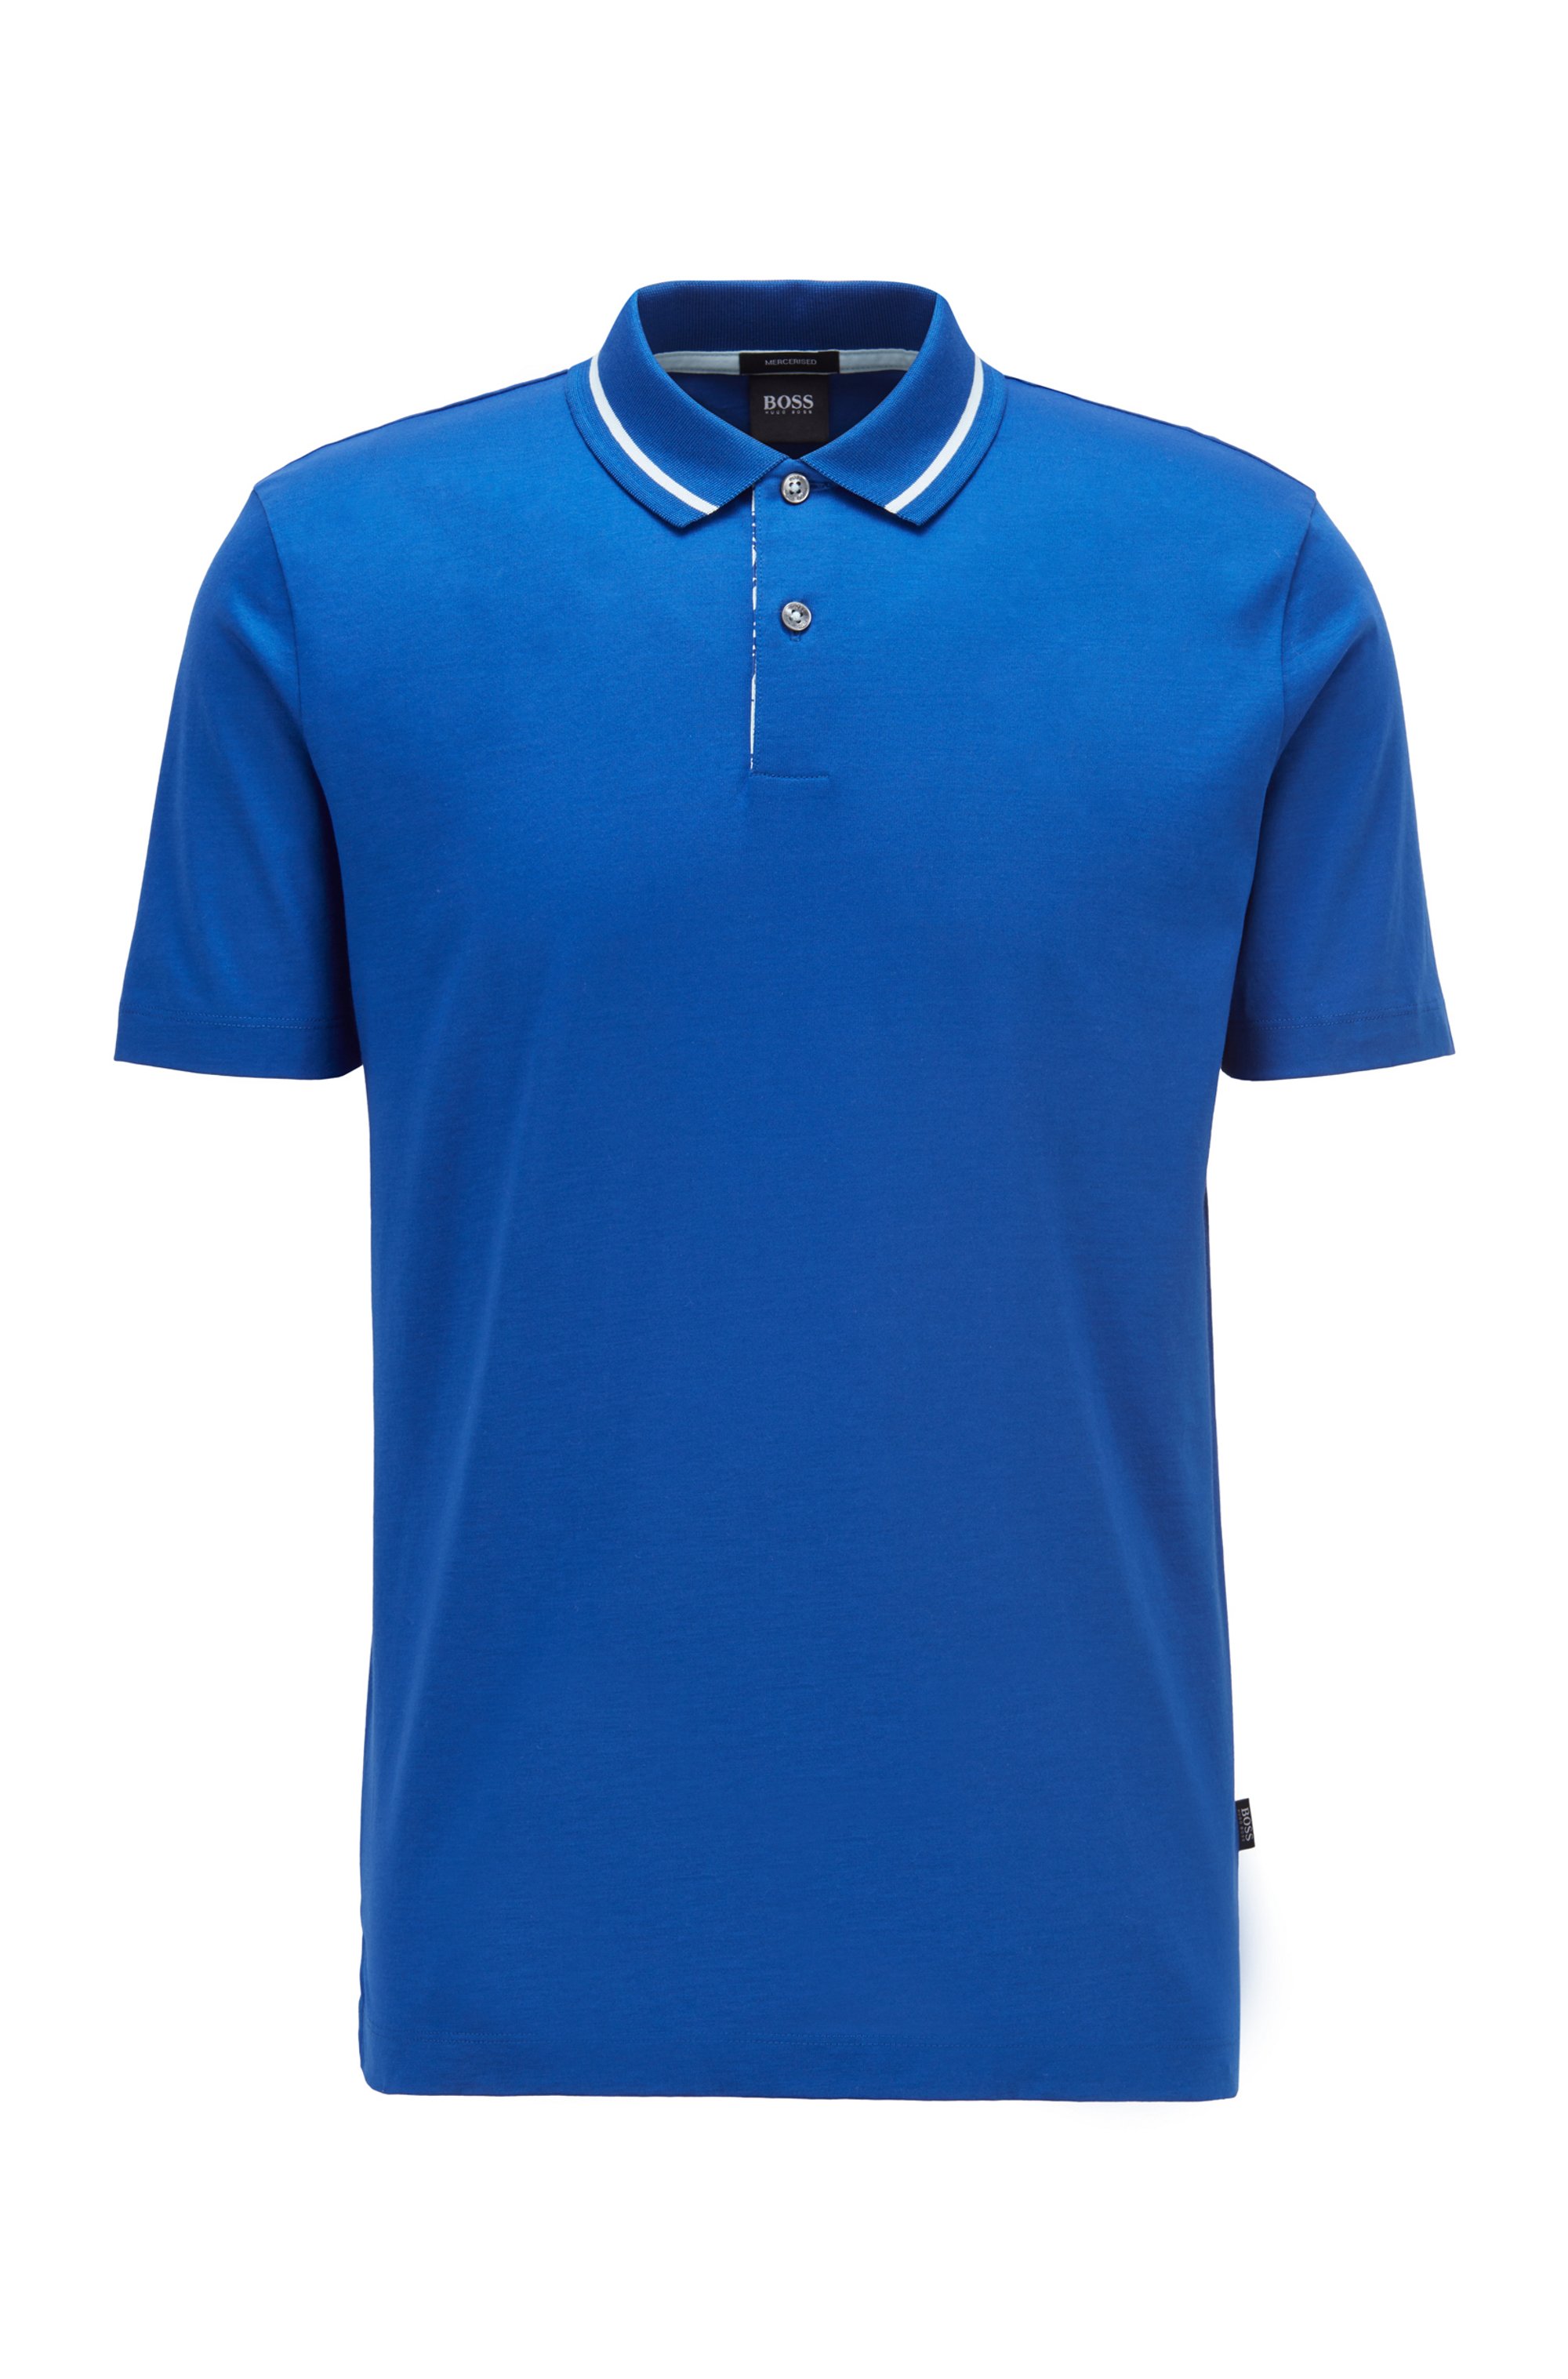 Poloshirt aus merzerisierter Baumwolle mit Print unter der Blende, Blau